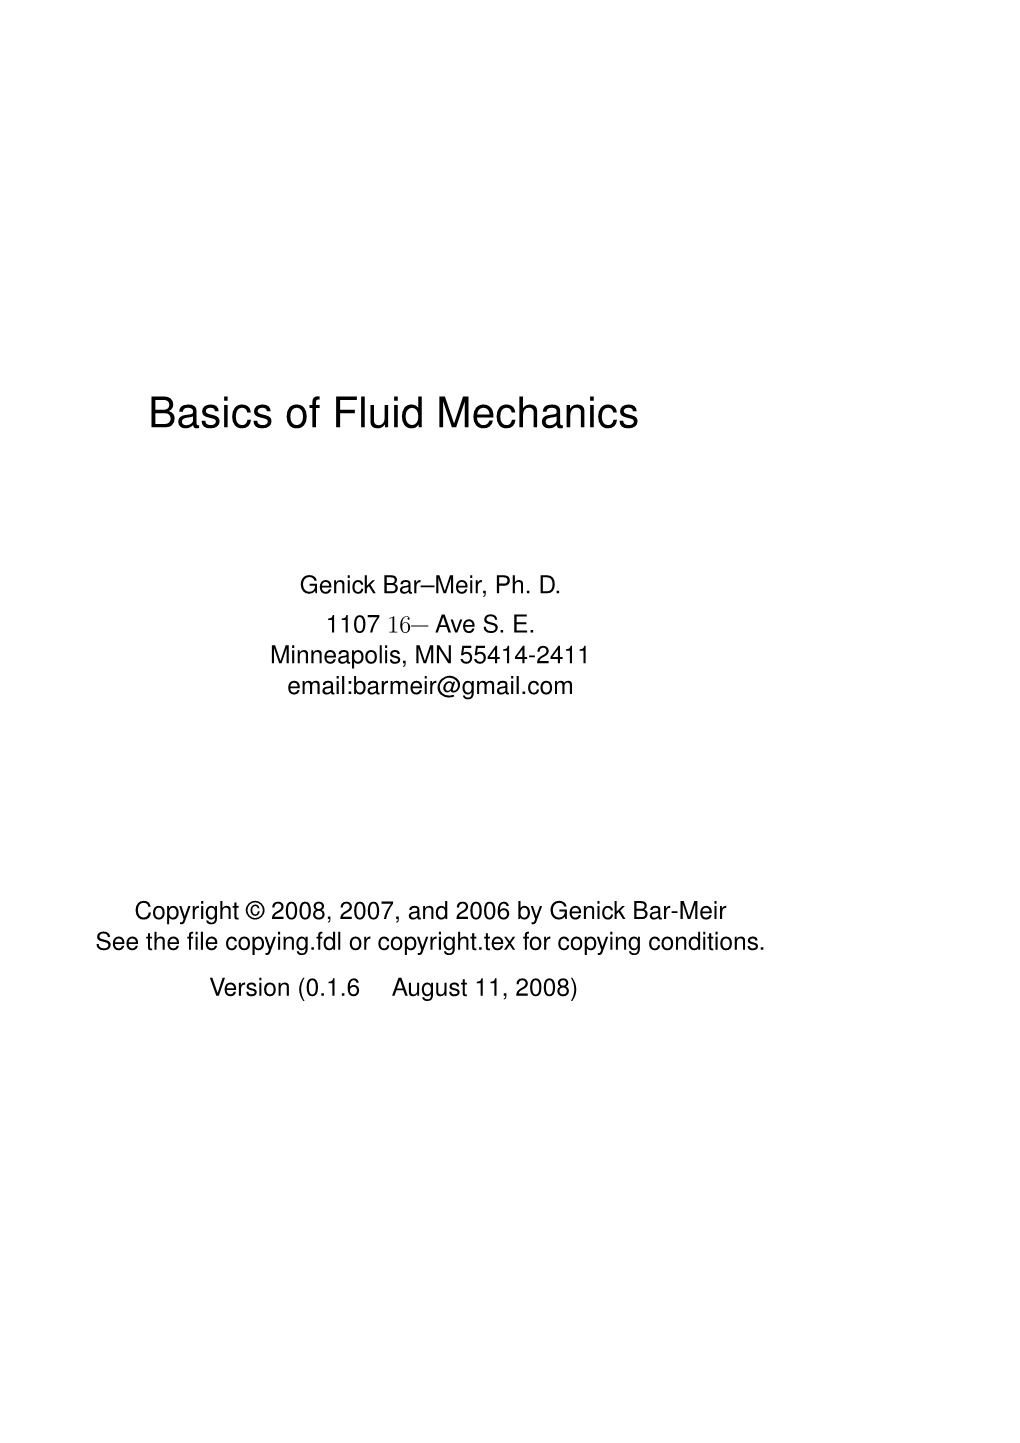 Basics of Fluid Mechanics